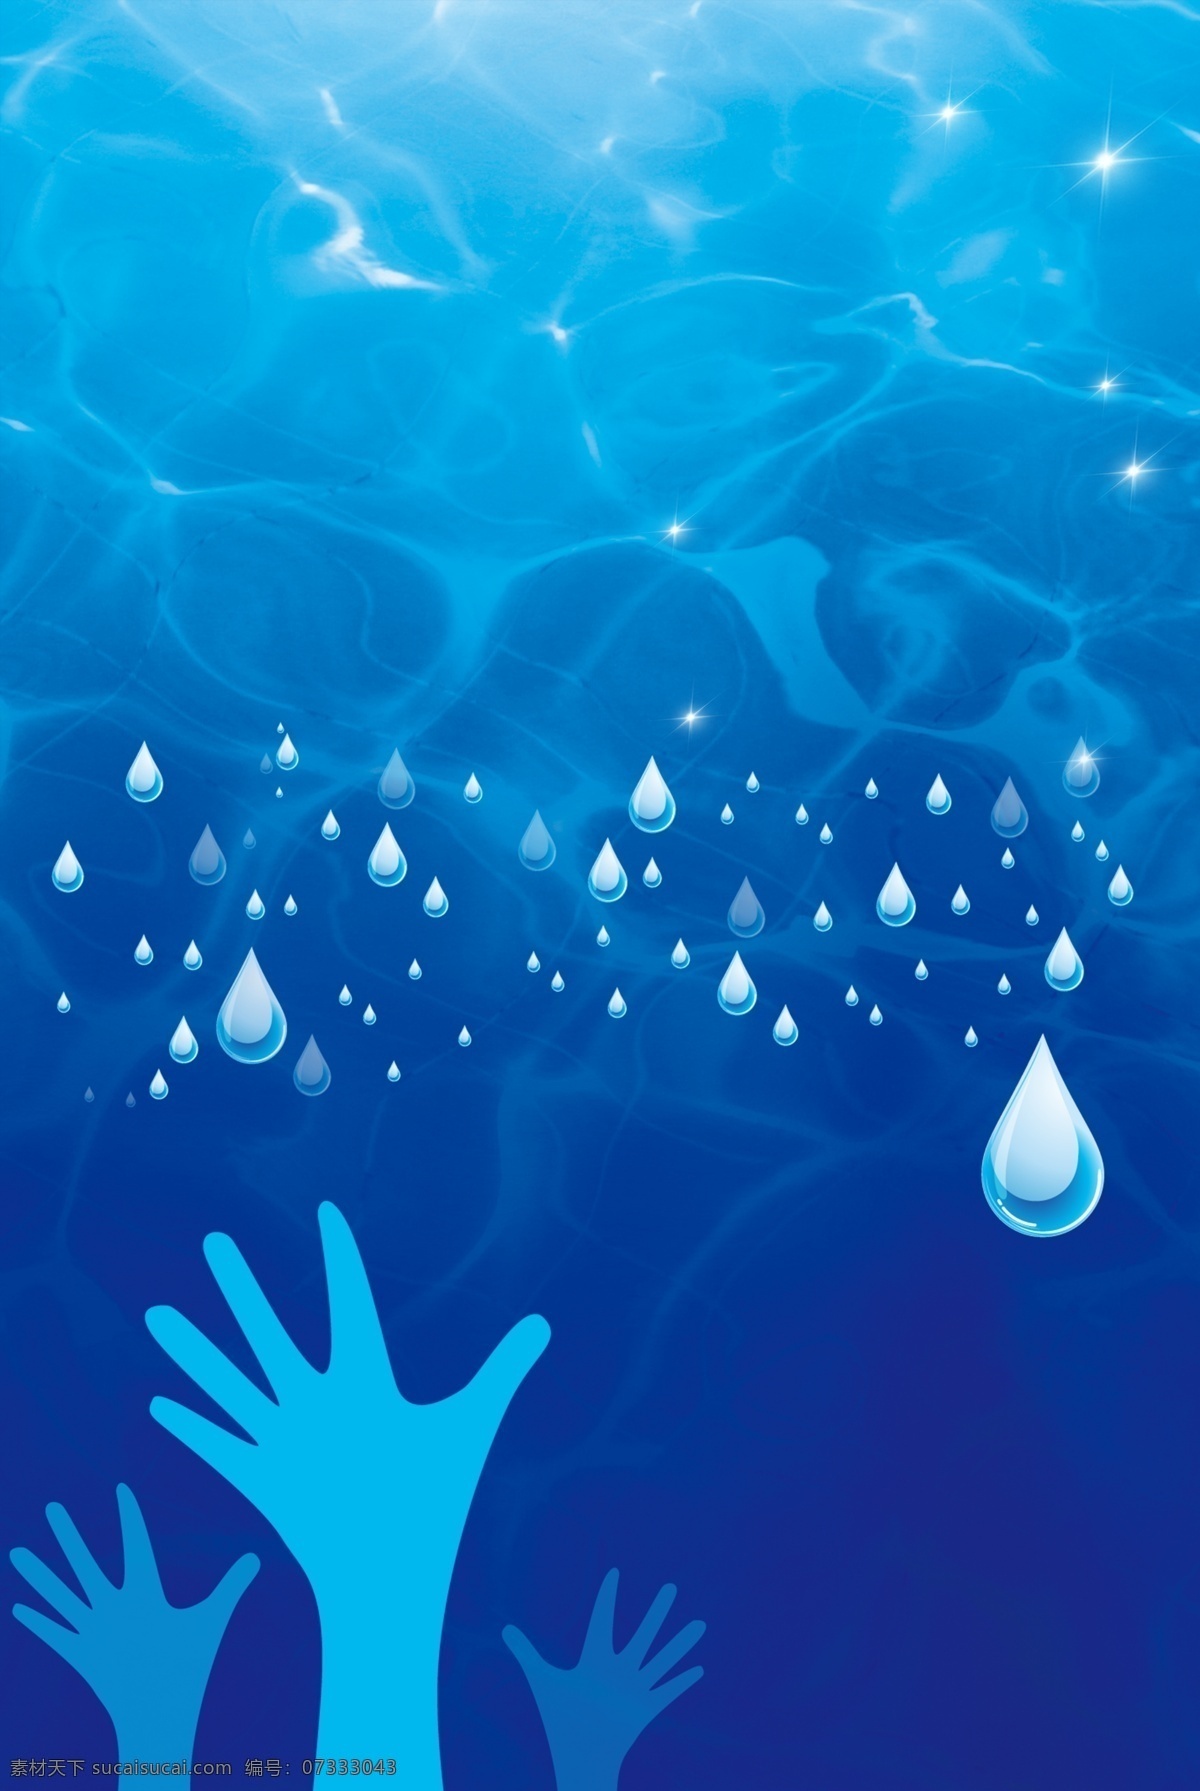 创意 简约 蓝色 世界 水日 合成 背景 世界水日 水资源 保护水资源 环保 节约用水 清新 水滴